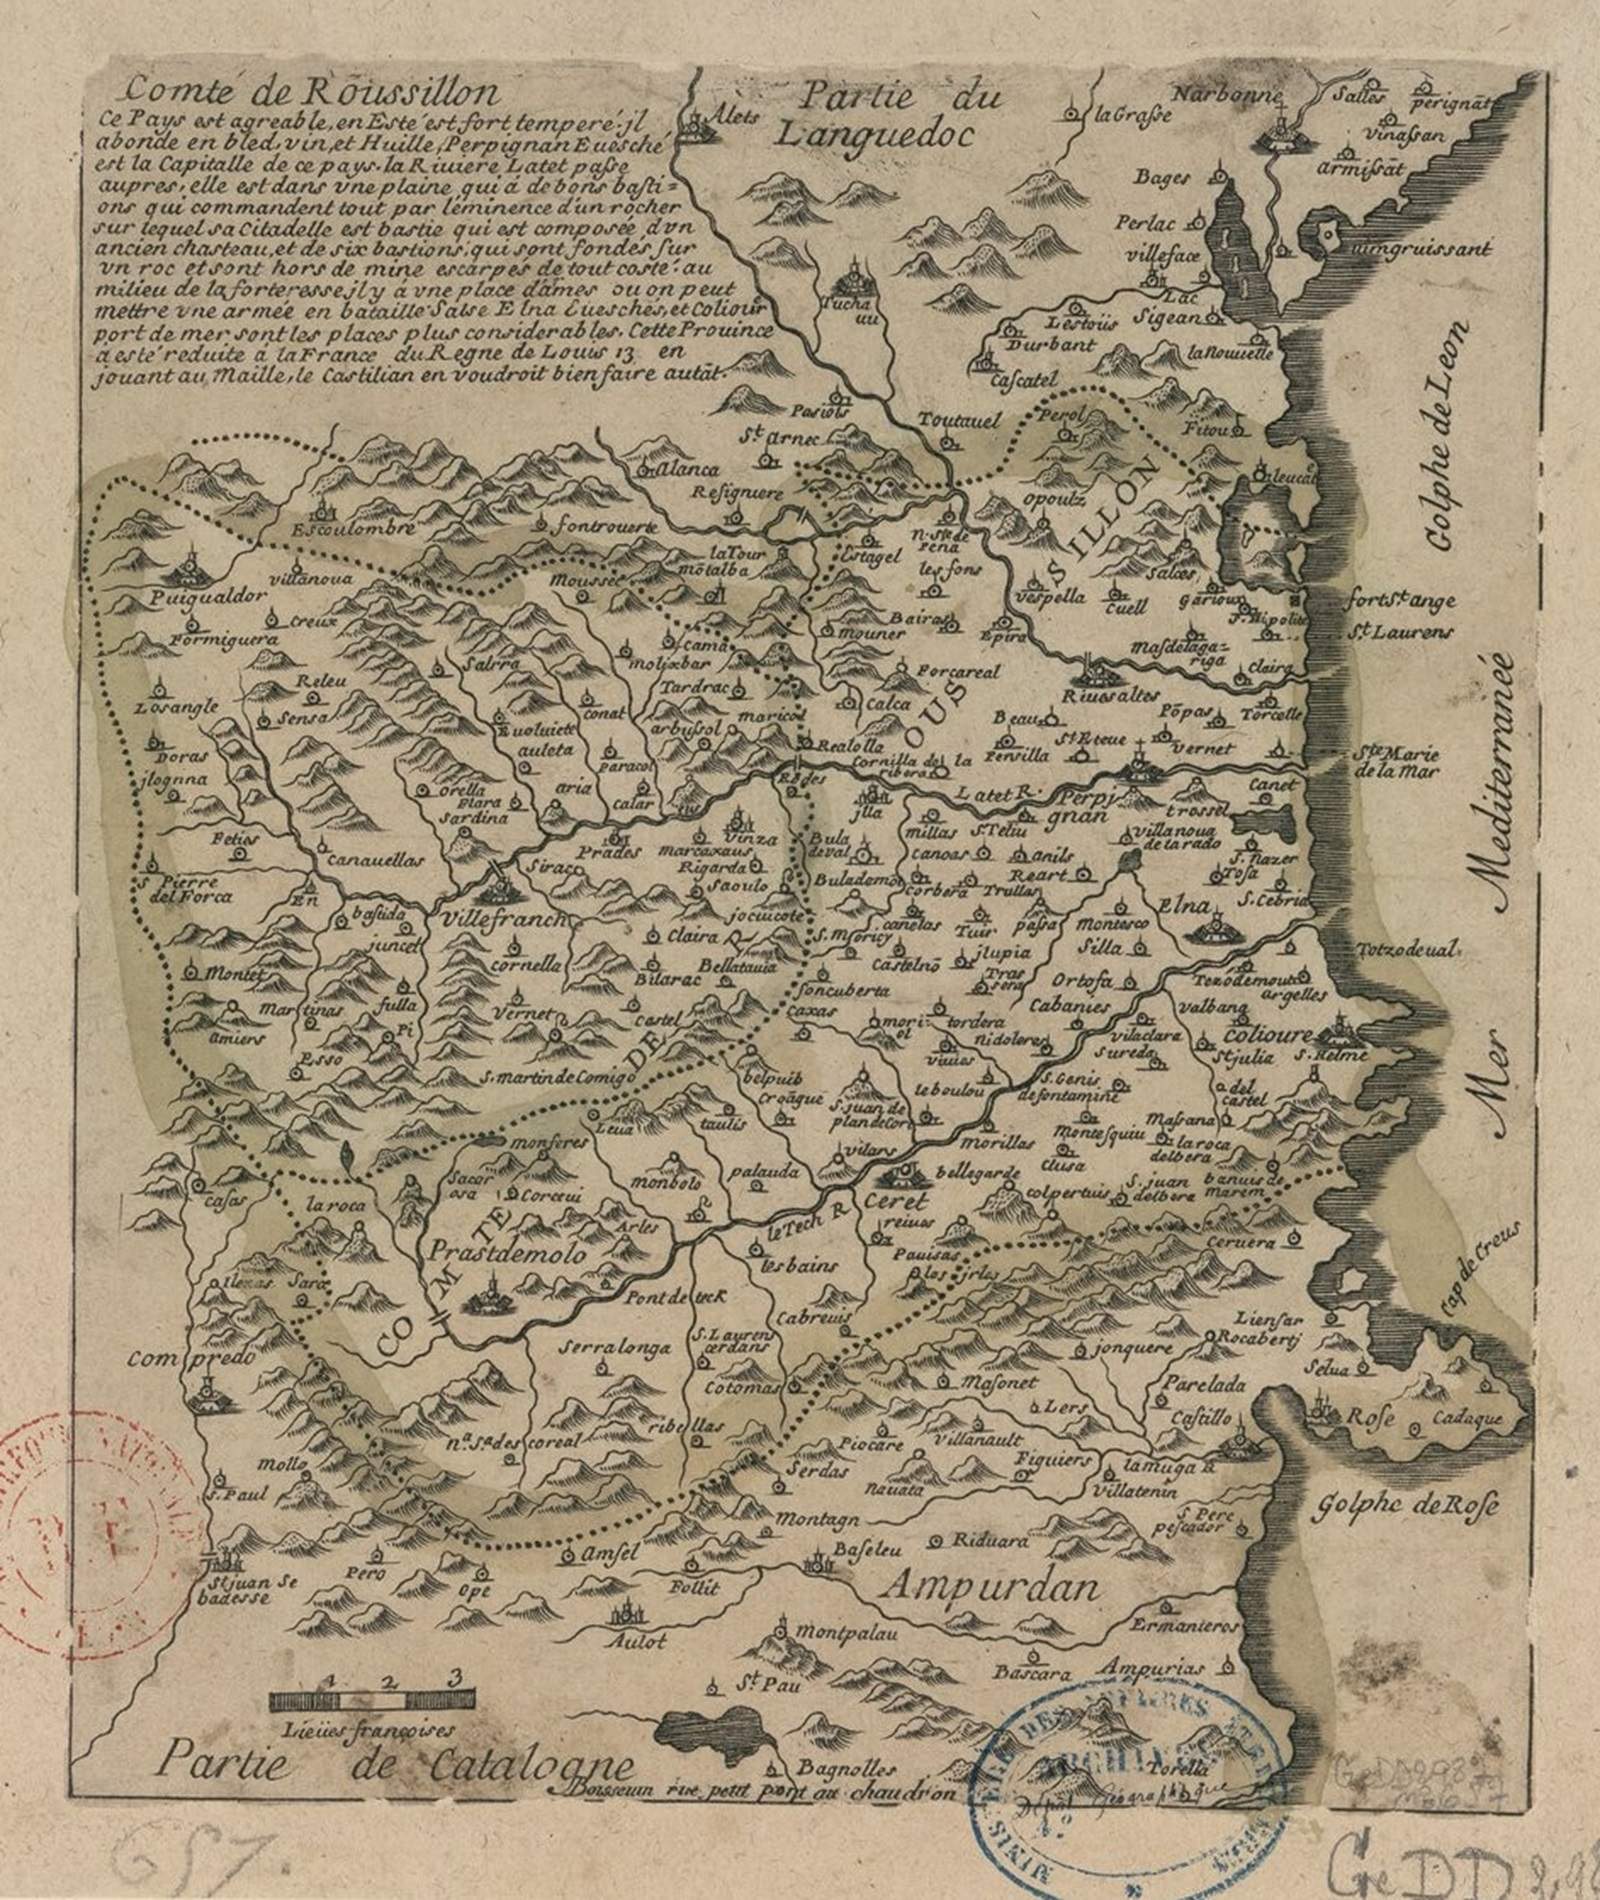 Mapa francés del condado del Rosellón (siglo XVII). Fuente Bibliothèque Nationale de France